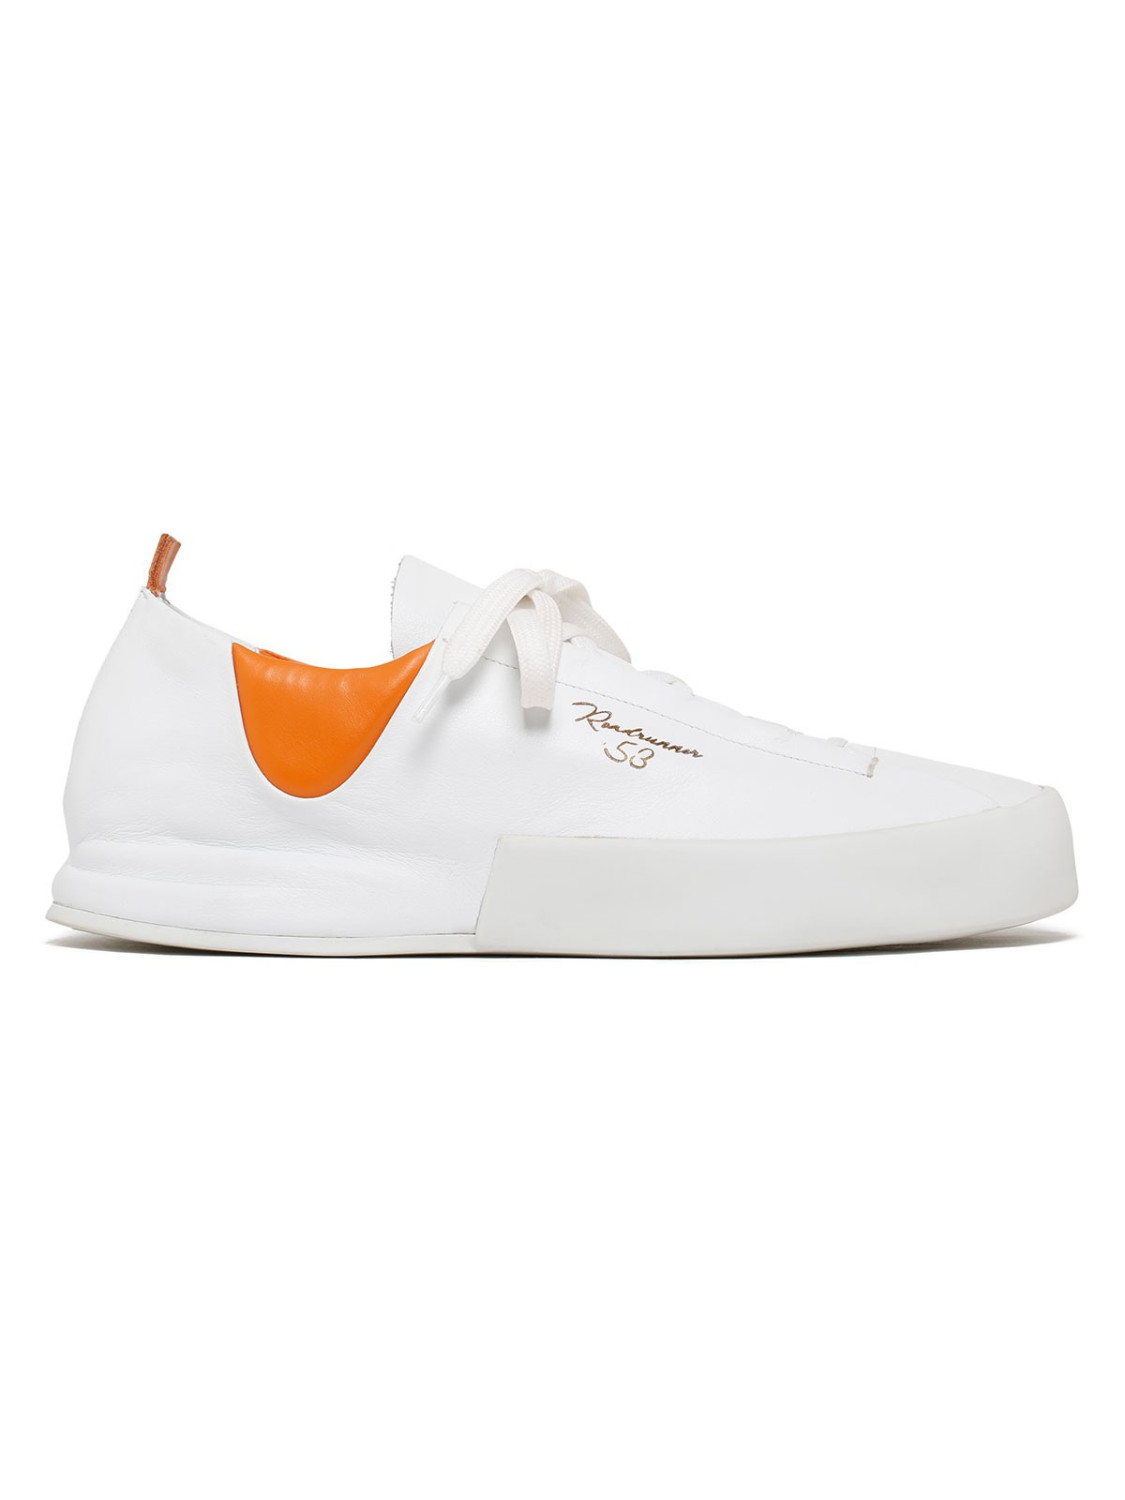 Sneakers Incerti bianco e arancione